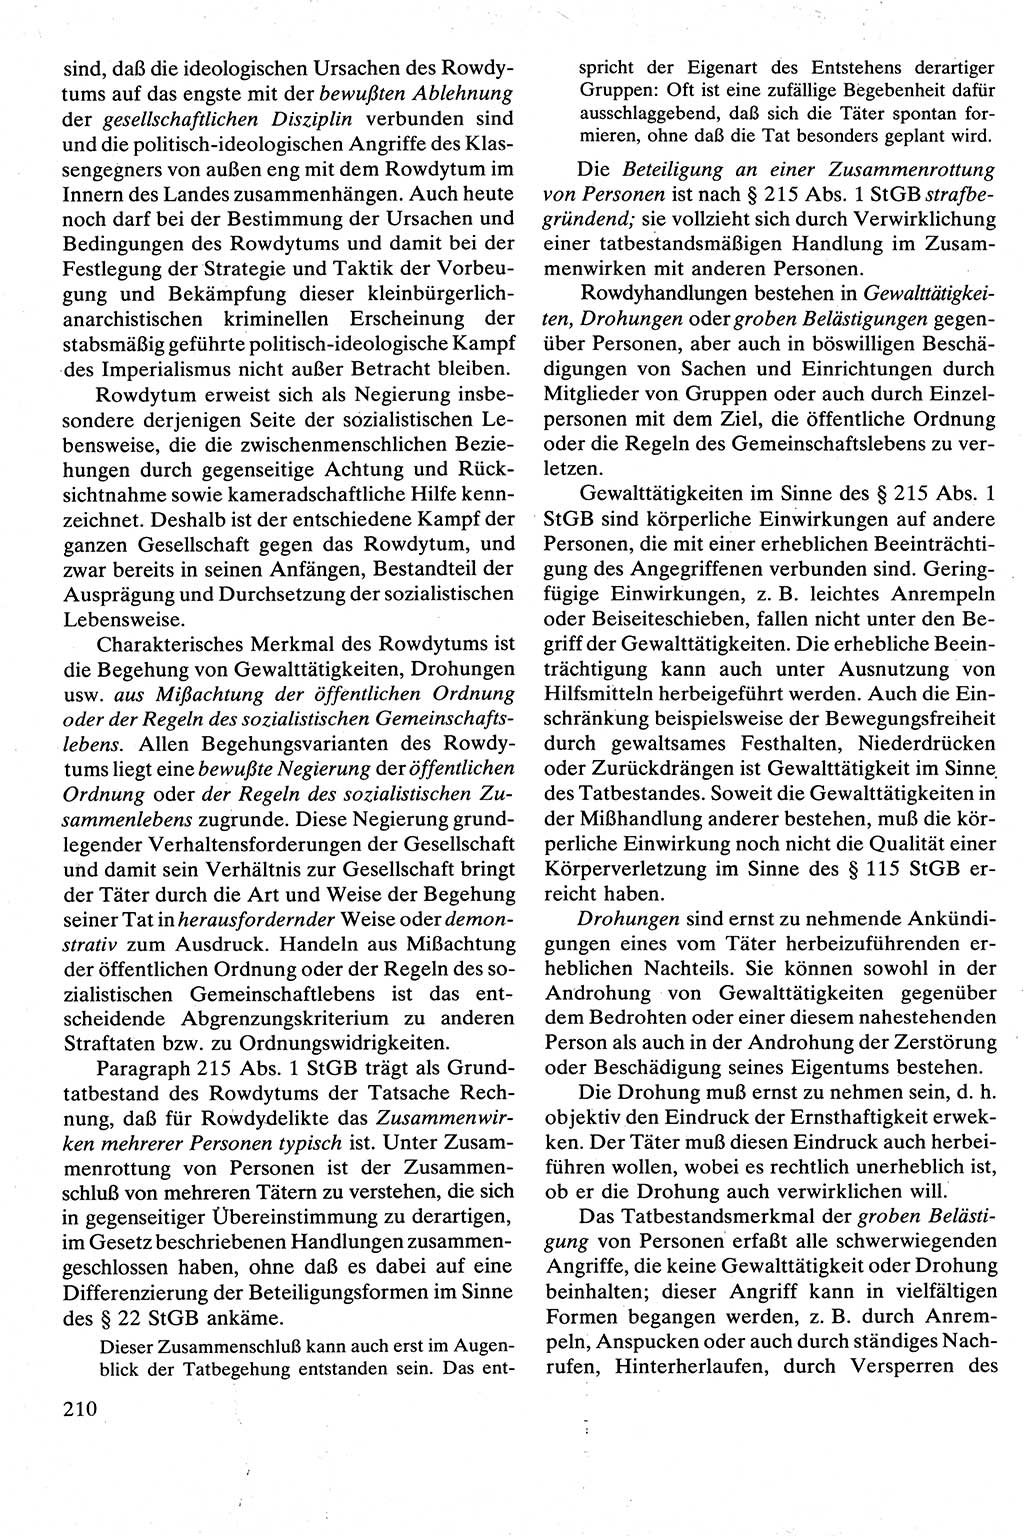 Strafrecht [Deutsche Demokratische Republik (DDR)], Besonderer Teil, Lehrbuch 1981, Seite 210 (Strafr. DDR BT Lb. 1981, S. 210)